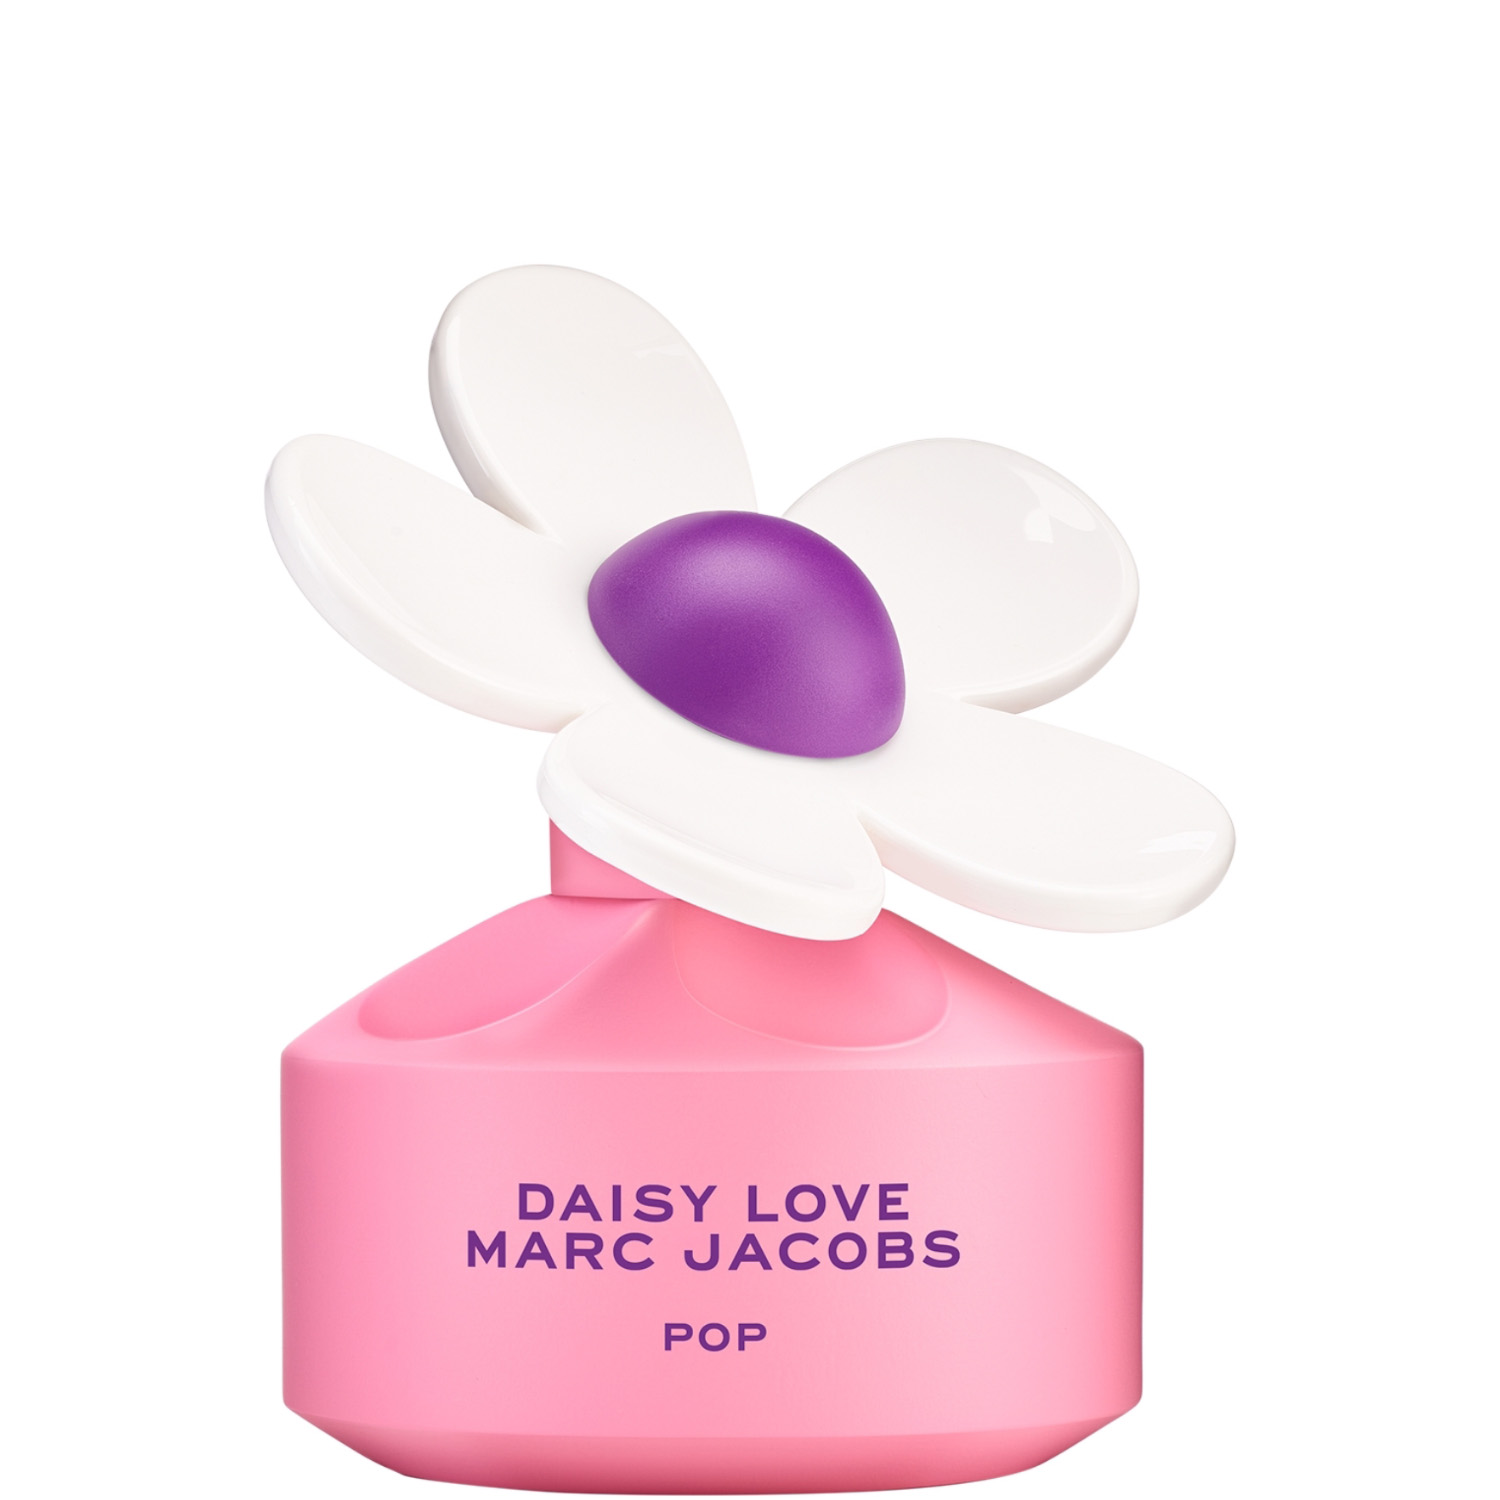 Marc Jacobs Daisy Love Pop Eau de Toilette 50ml